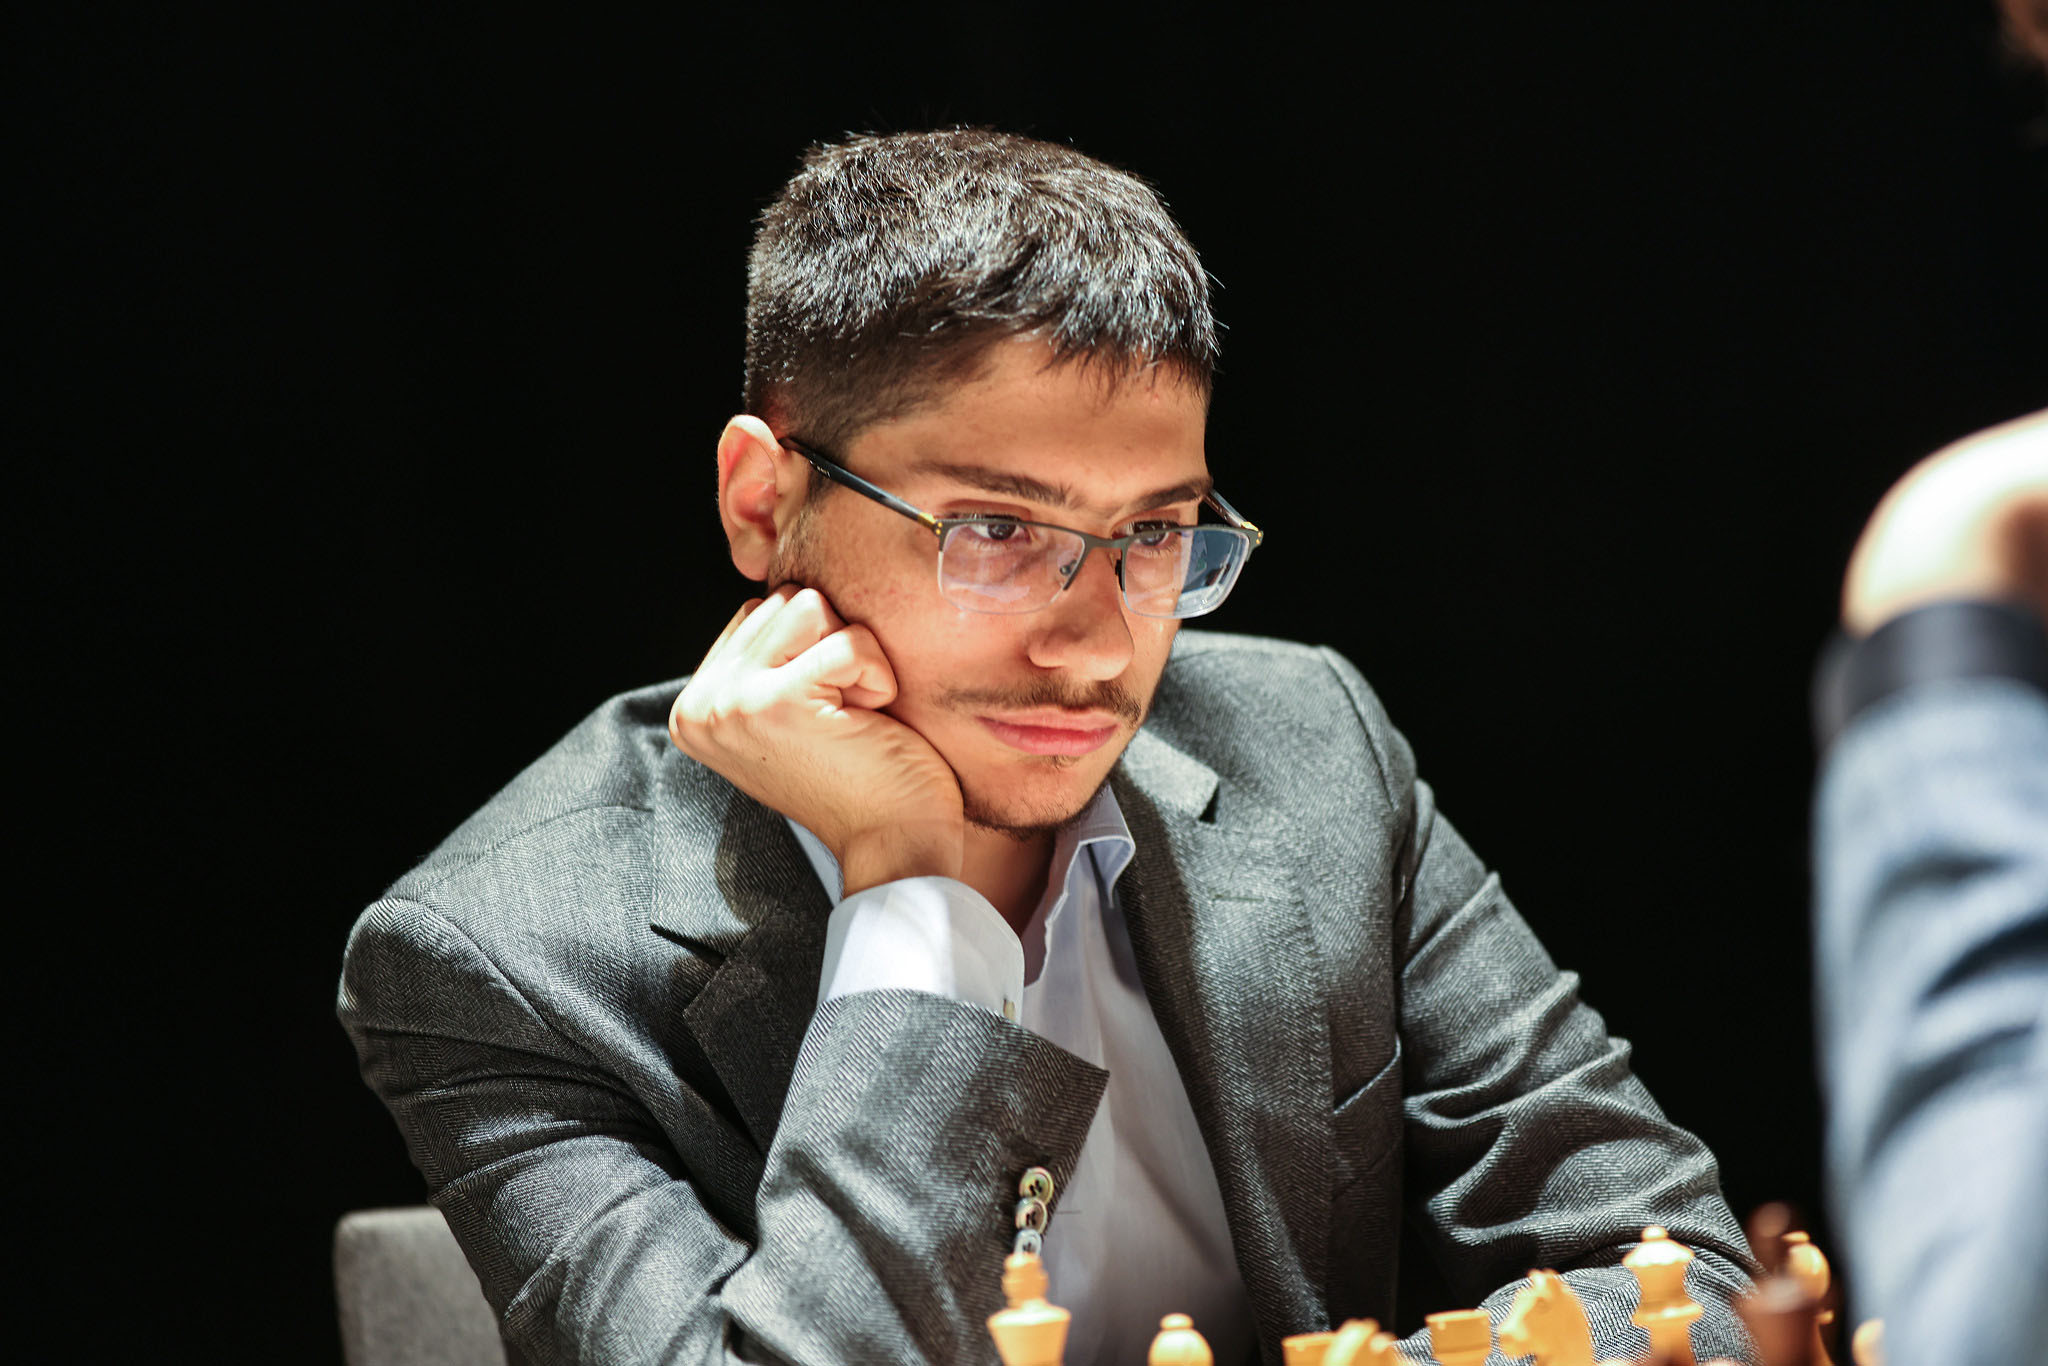 Firouzja Among 'Full' Grand Chess Tour Participants But Not